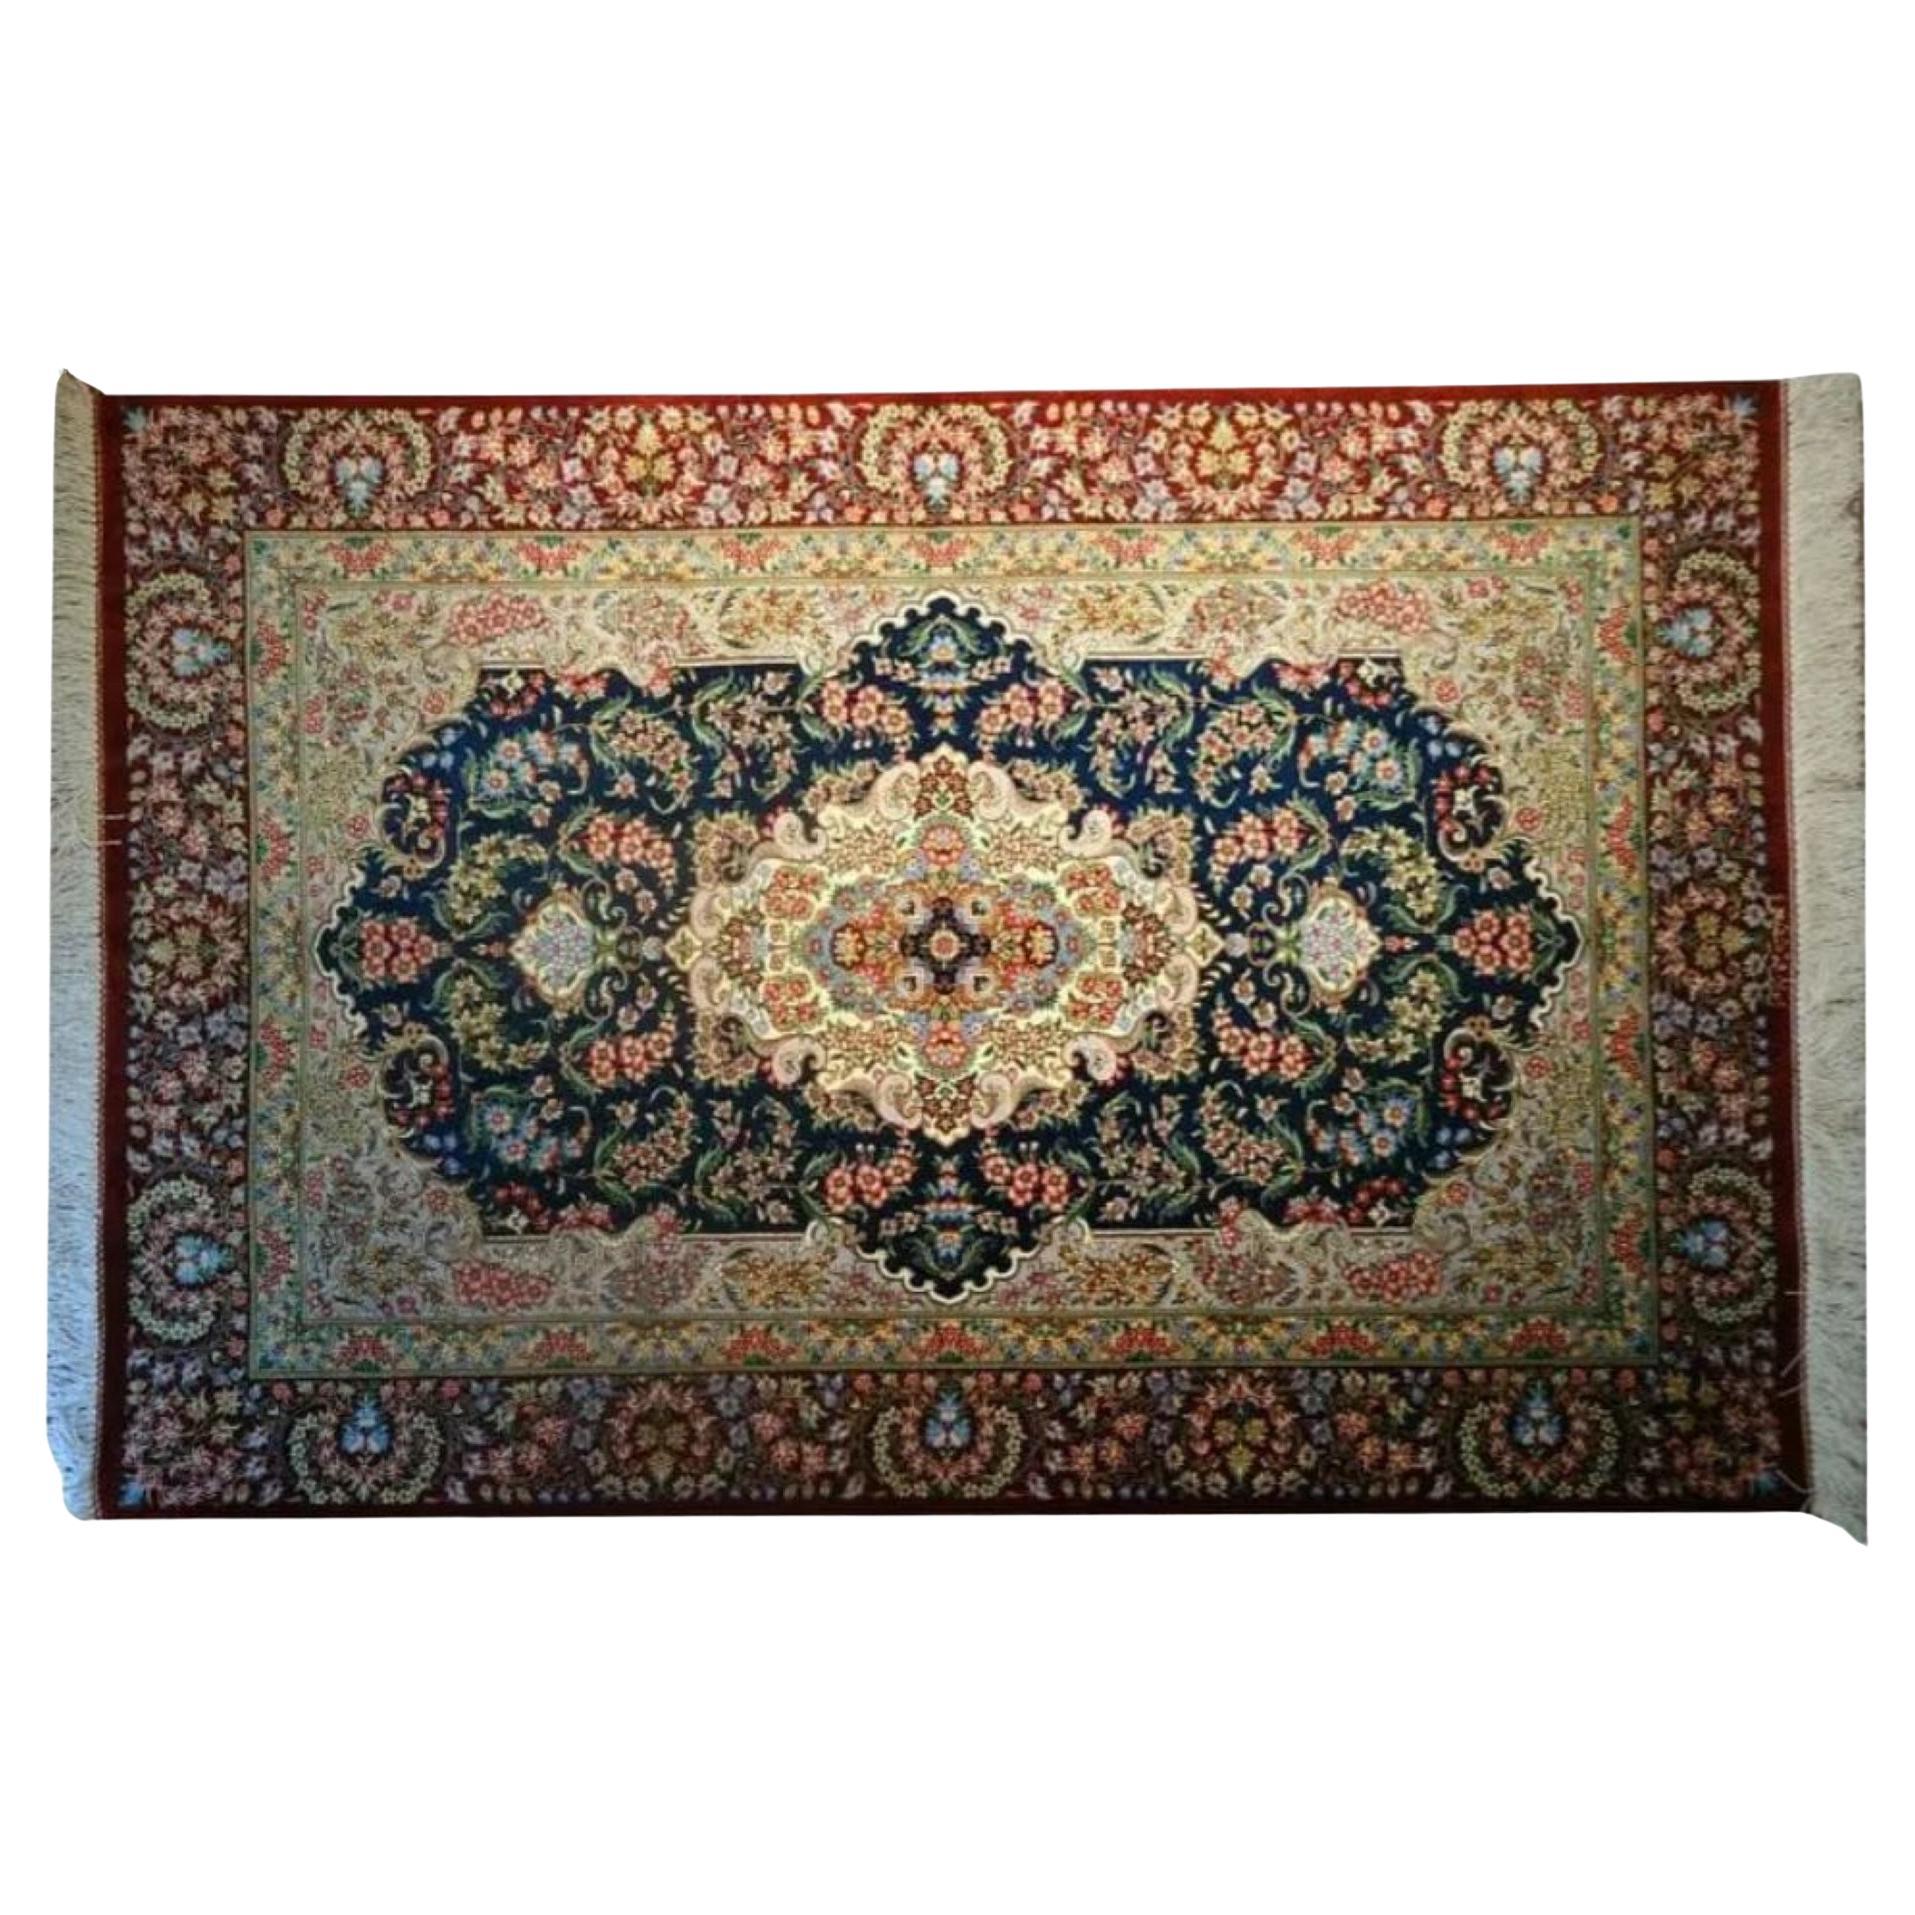 Very fine Persian Silk Ghom - 4.9' x 3.1' For Sale